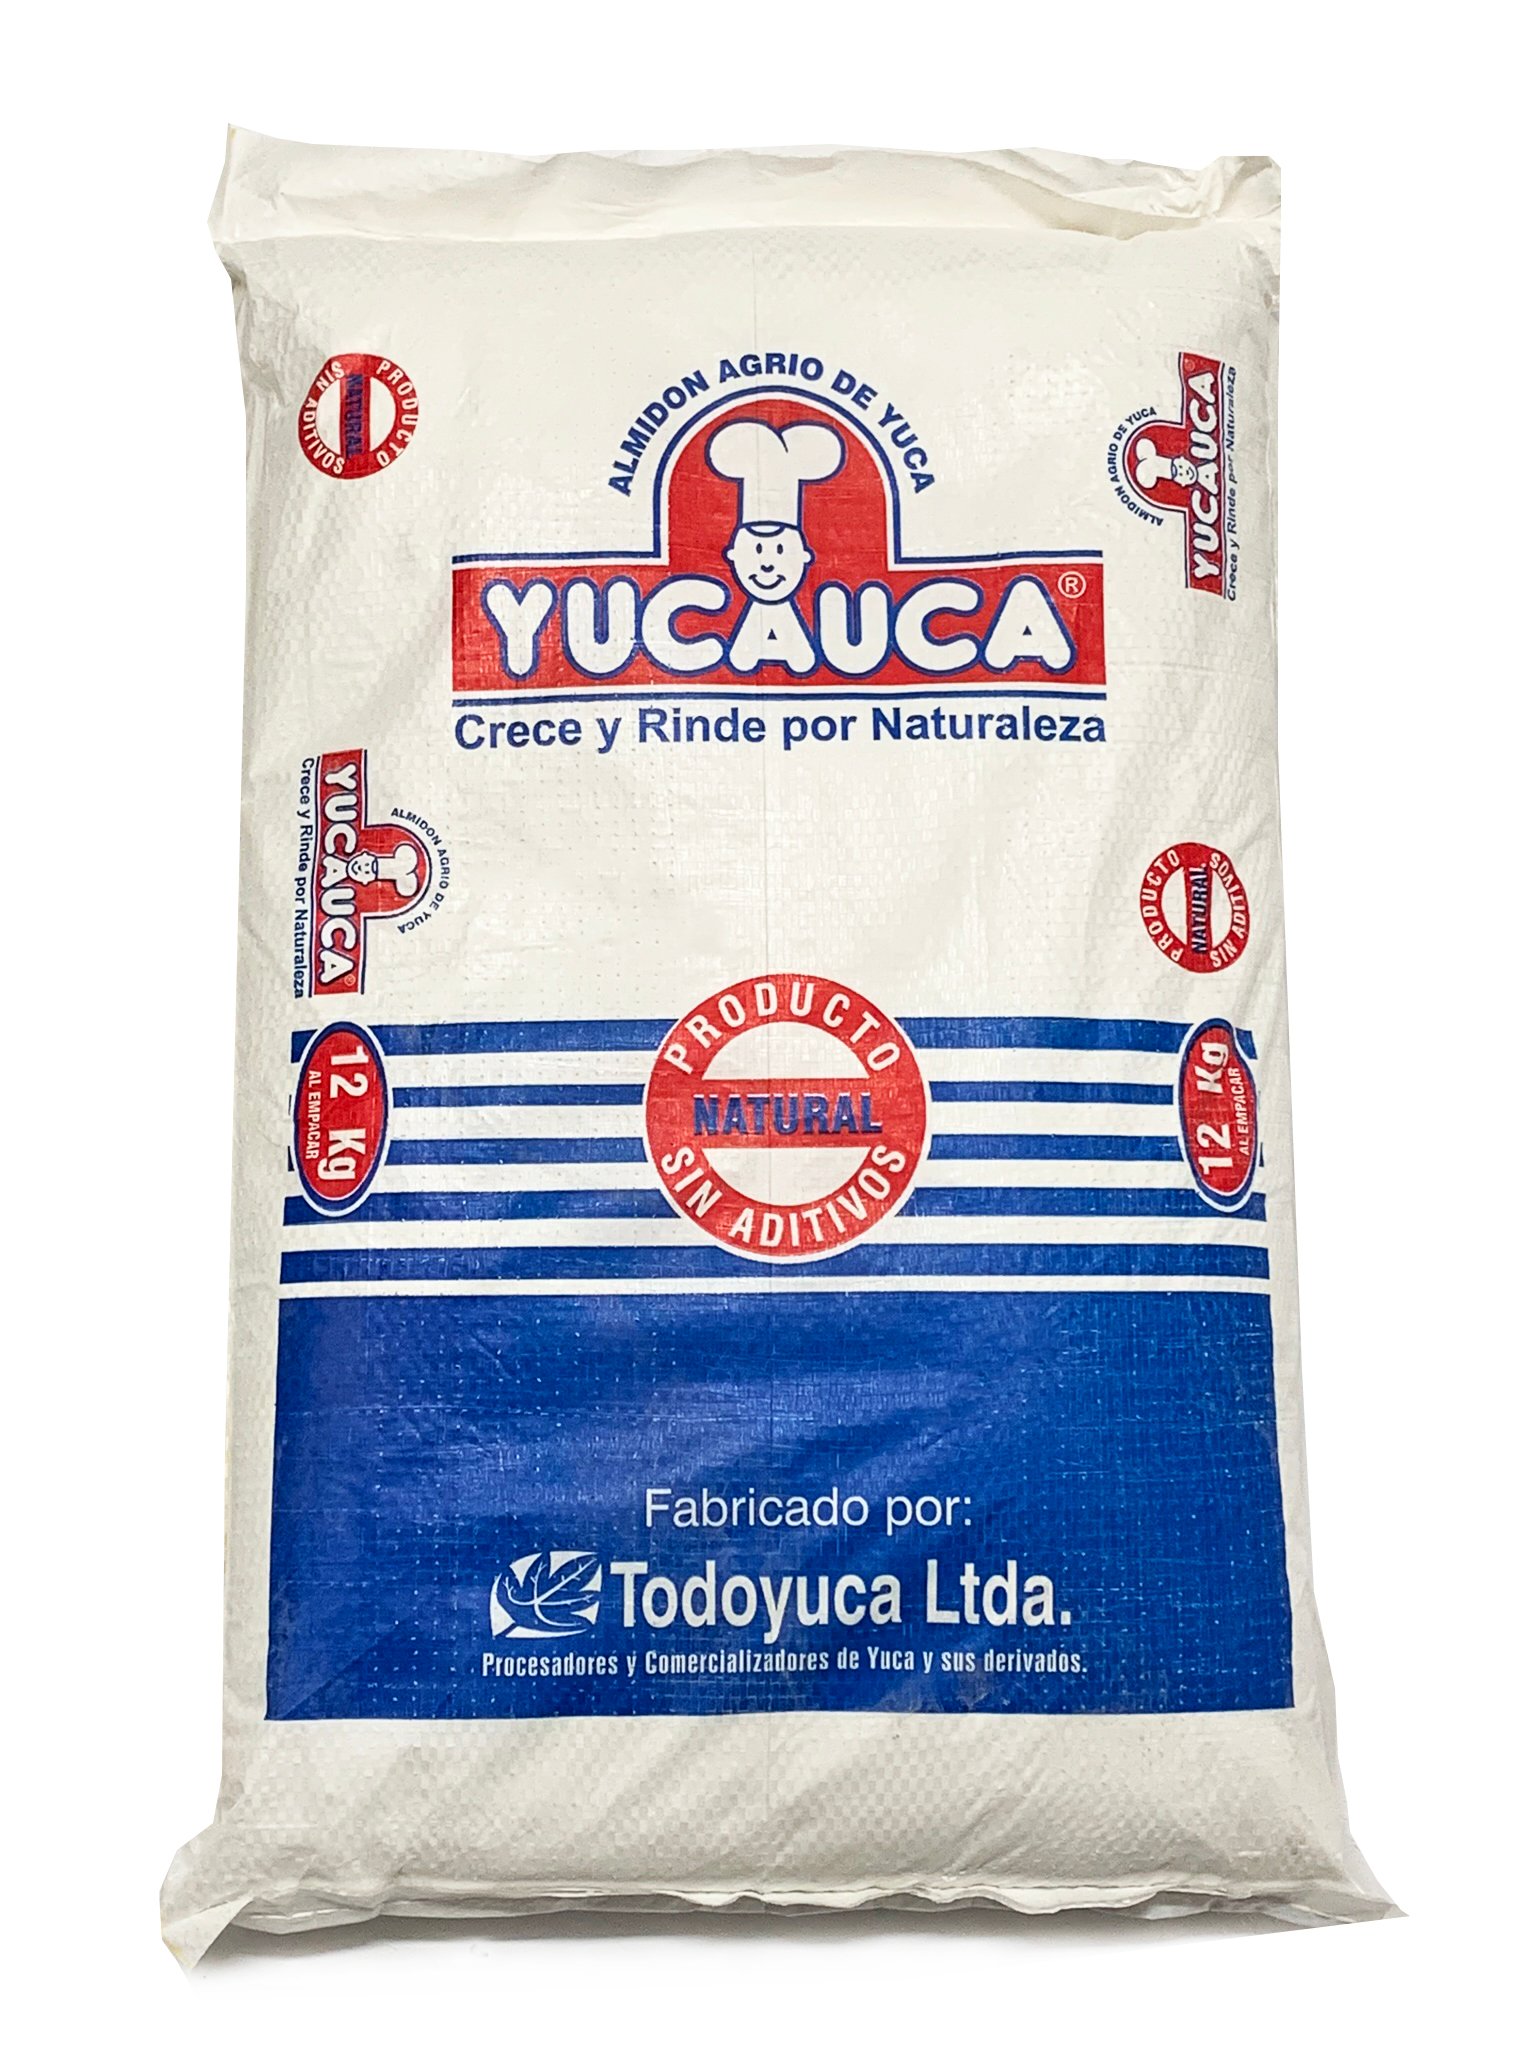 Almidón Agrio de Yuca Industrias Alimenticias 3 JJJ x 1 kg – Distribuidora  FP Medellin Colombia